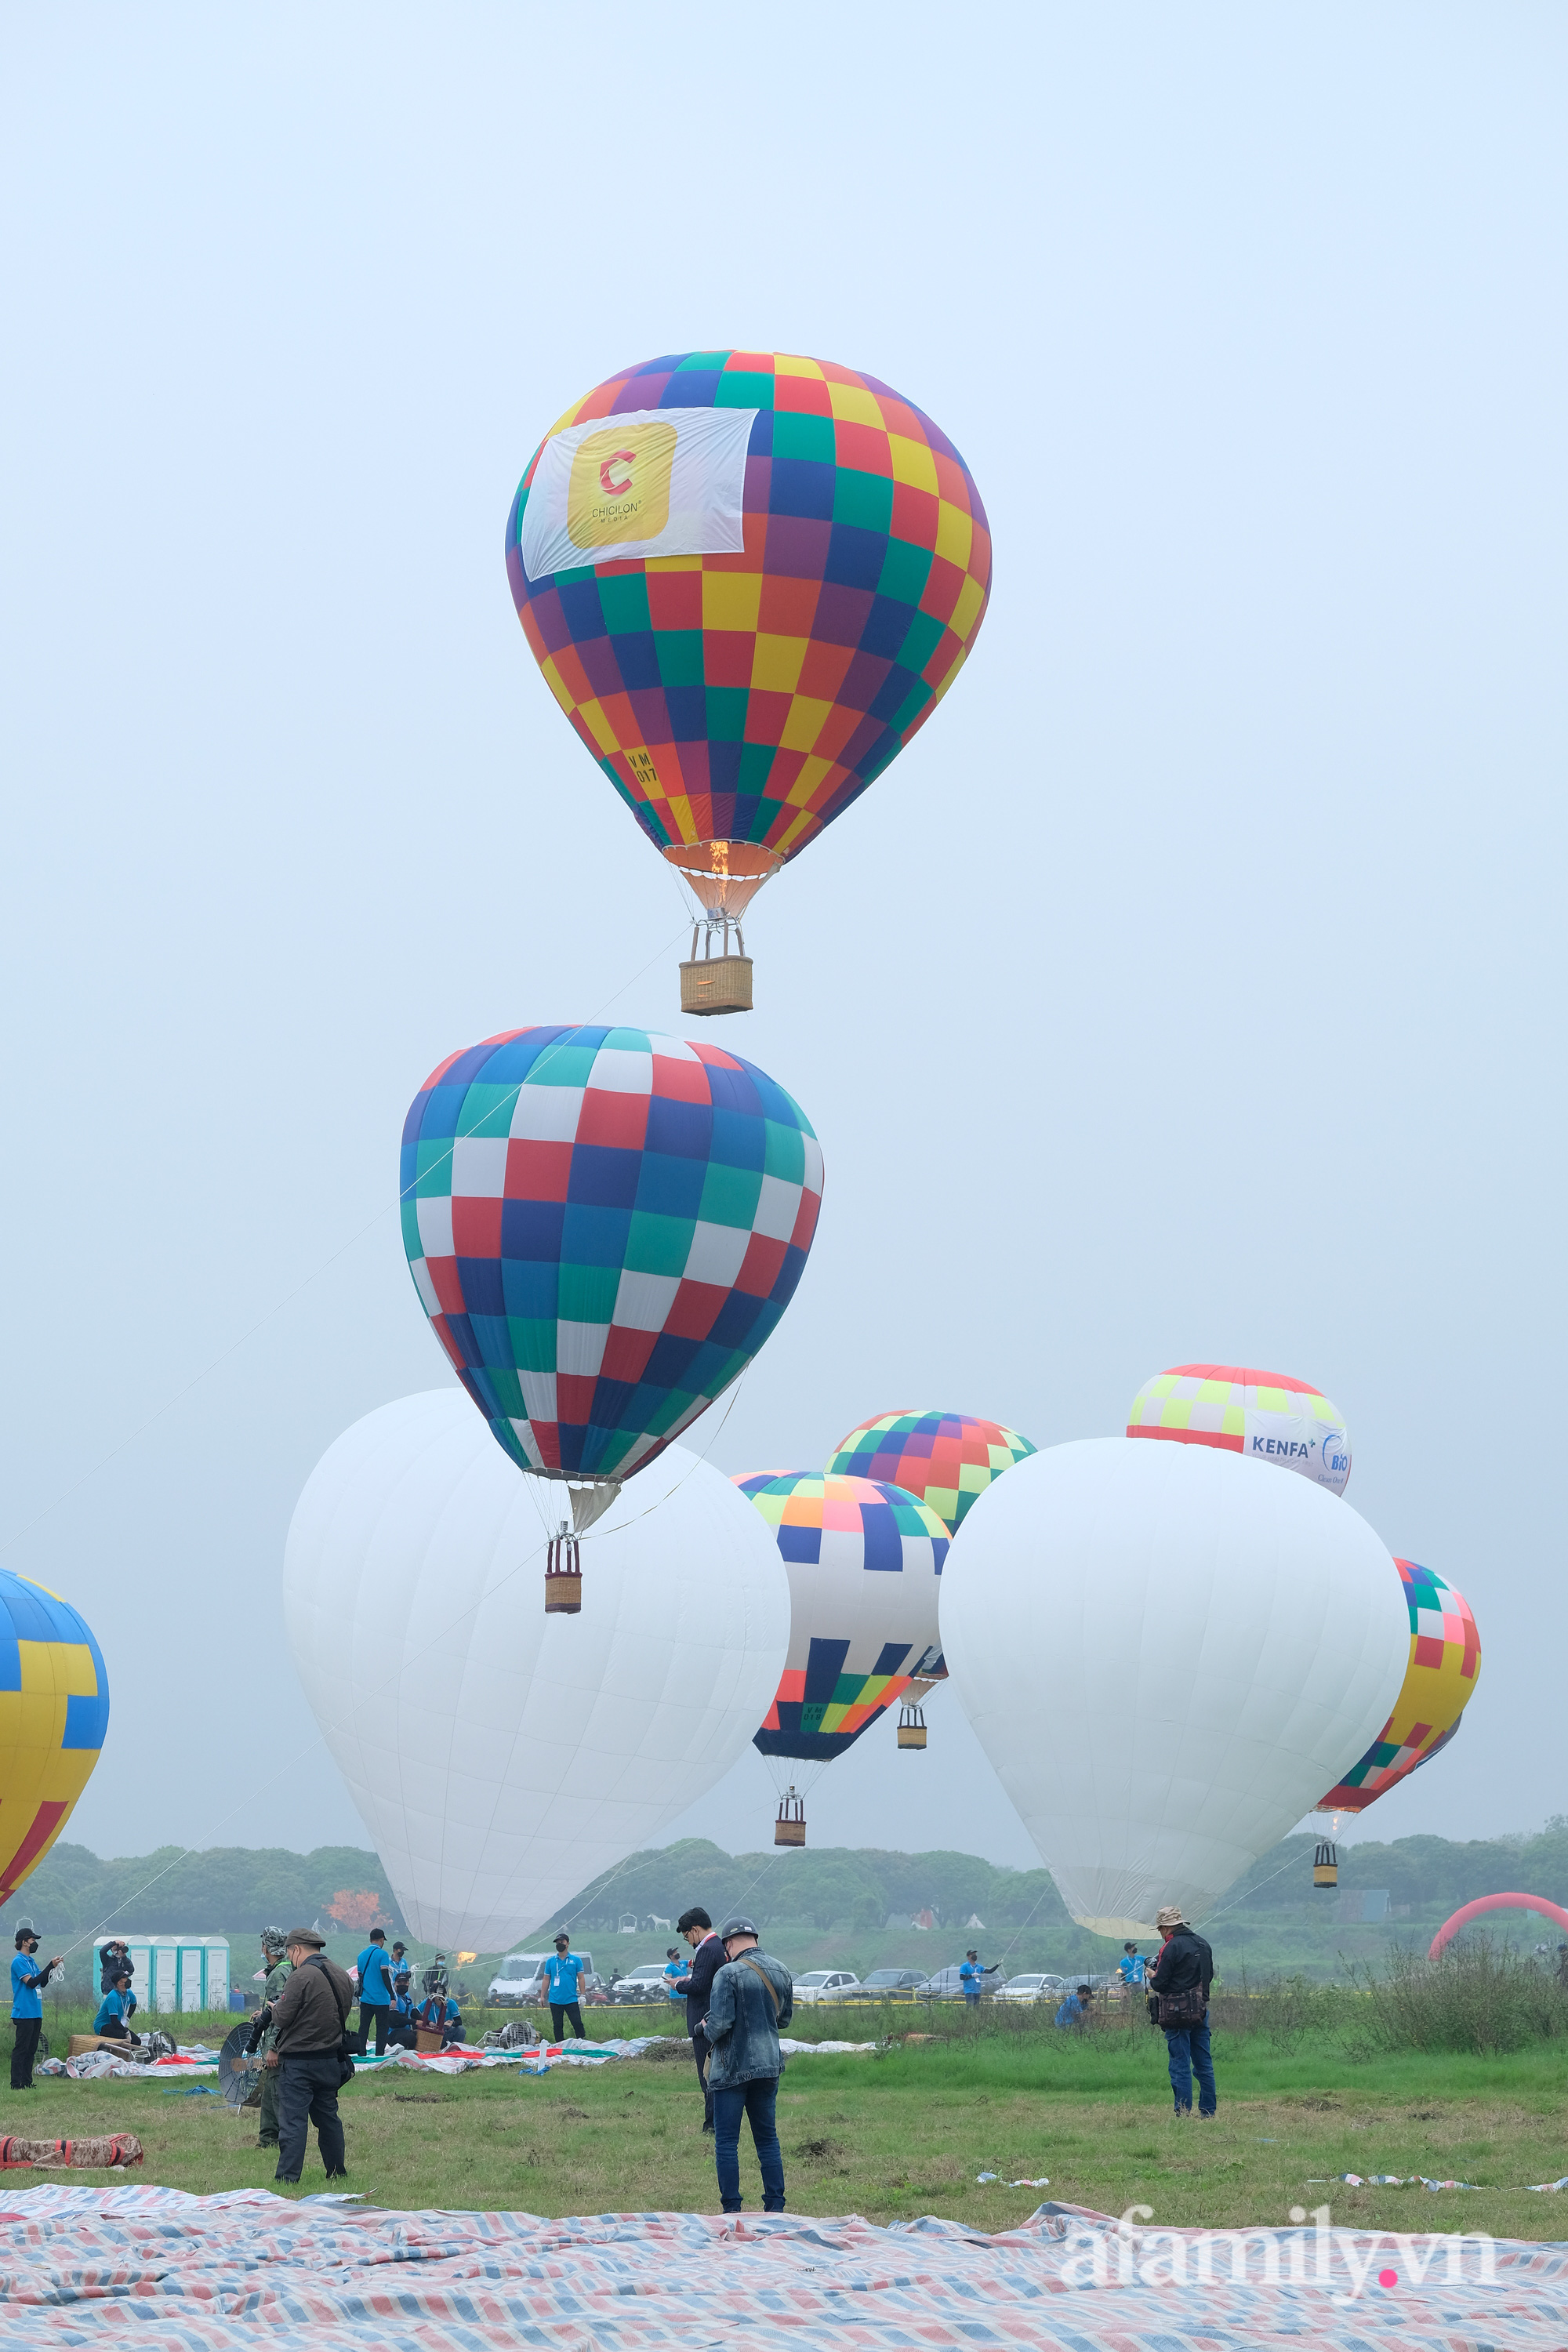 Lần đầu tiên tổ chức Ngày hội khinh khí cầu tại Hà Nội: Nhanh chân đến để trải nghiệm khoảnh khắc hiếm có ngắm thành phố từ trên cao - Ảnh 7.